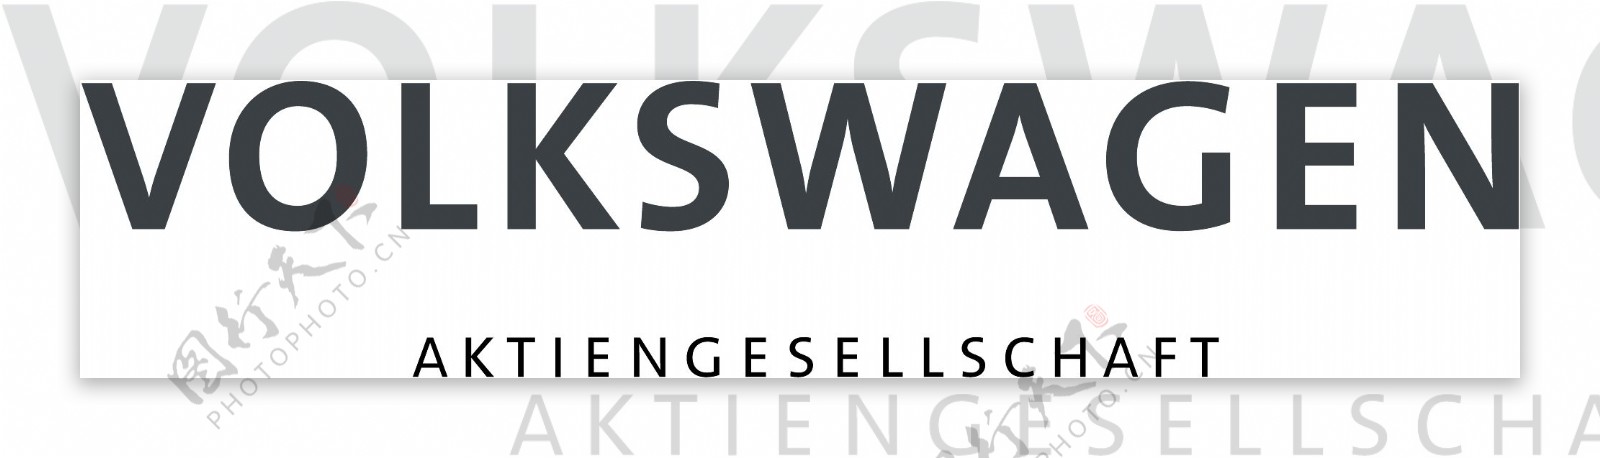 德国大众集团logo图片